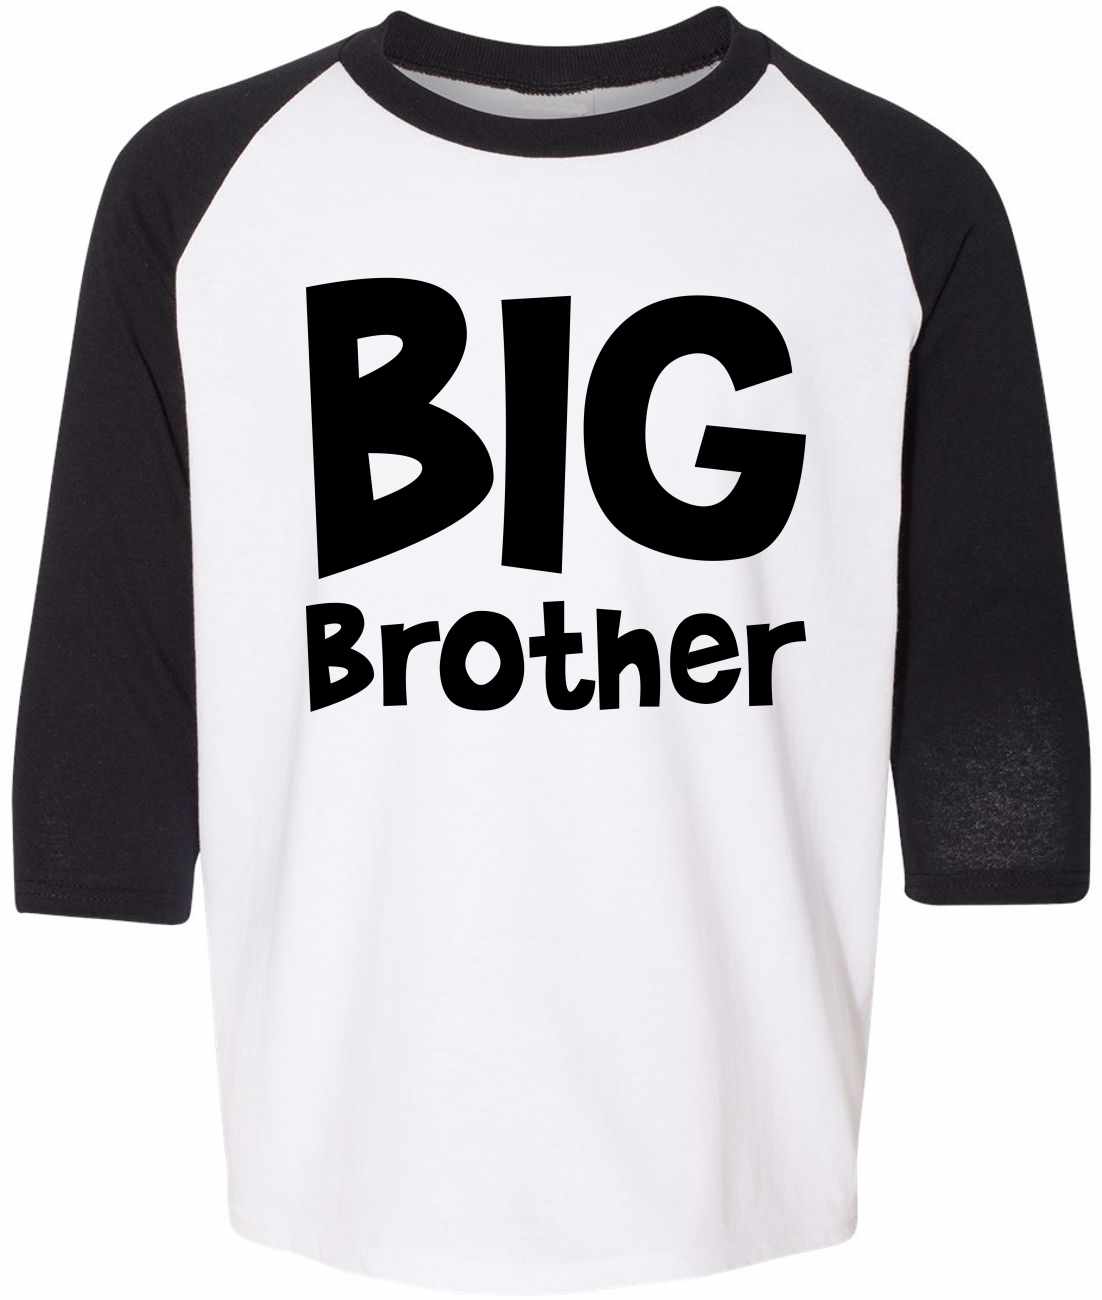 BIG BROTHER on Youth Baseball Shirt (#1157-212)